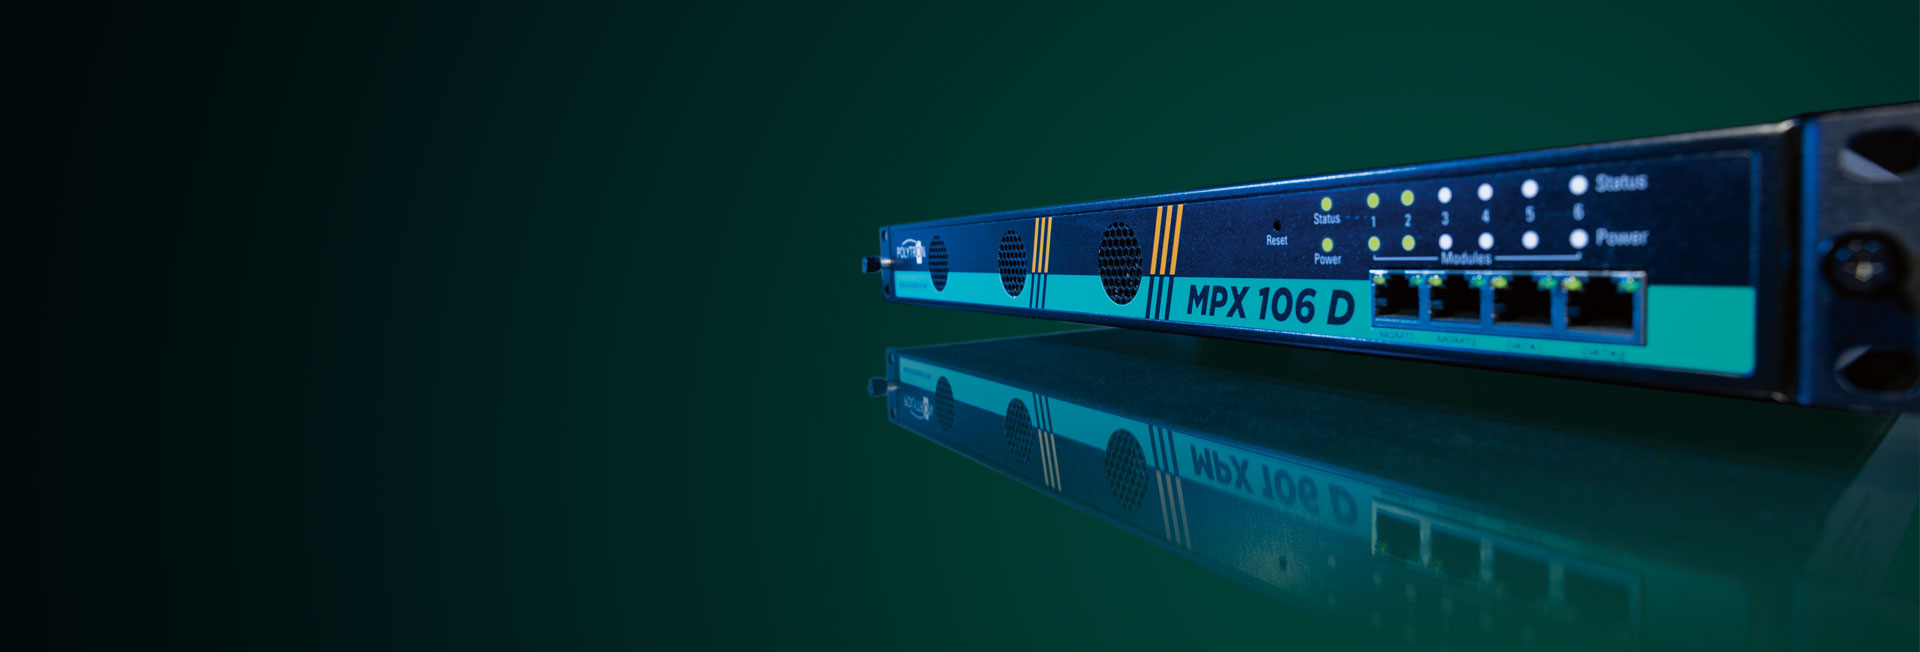 MPX-Serie - Modulare IP-basierte Kopfstelle mit Multiplexing